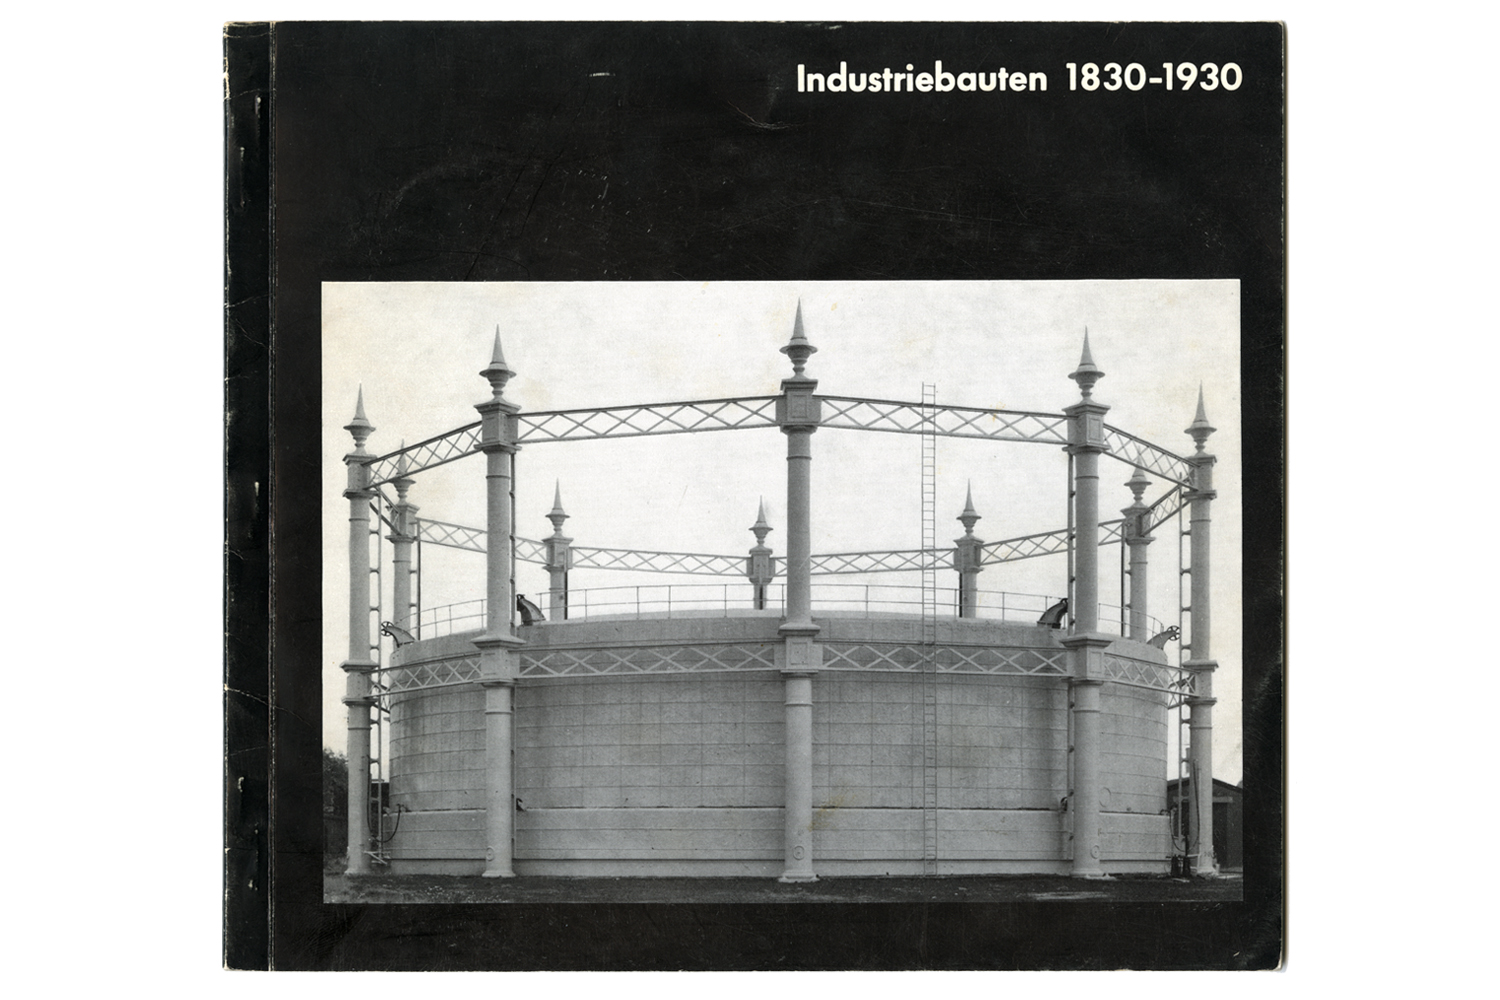 Image:Industriebauten 1830-1930, Exposition catalogue